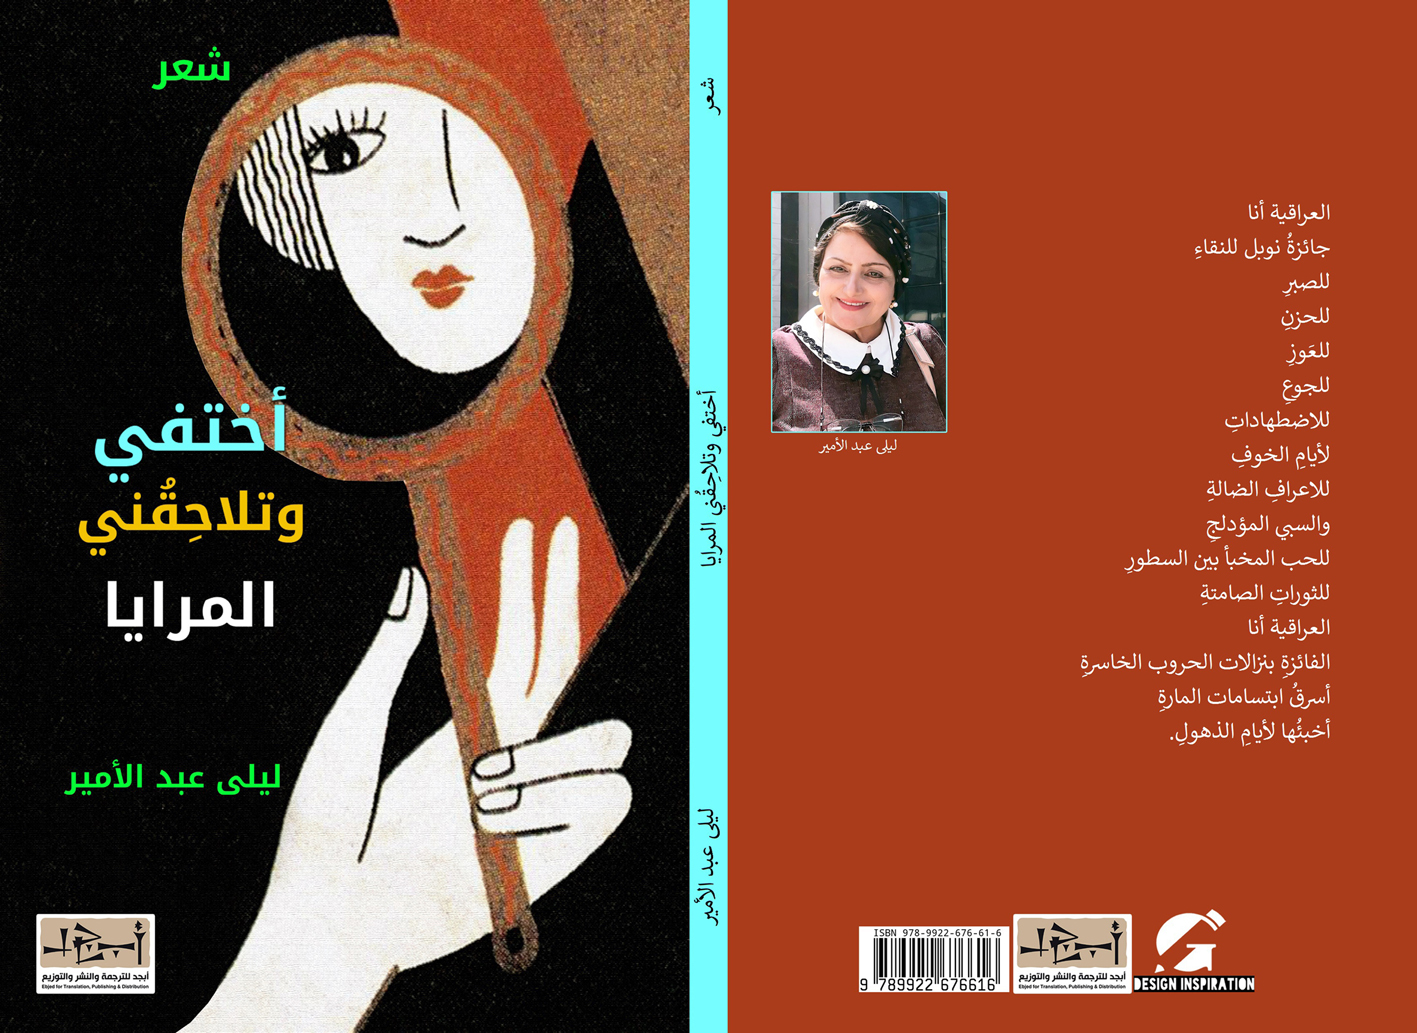 اسم الكتاب: أختفي وتلاحِقُني المرايا تأليف: ليلى عبد الامير 